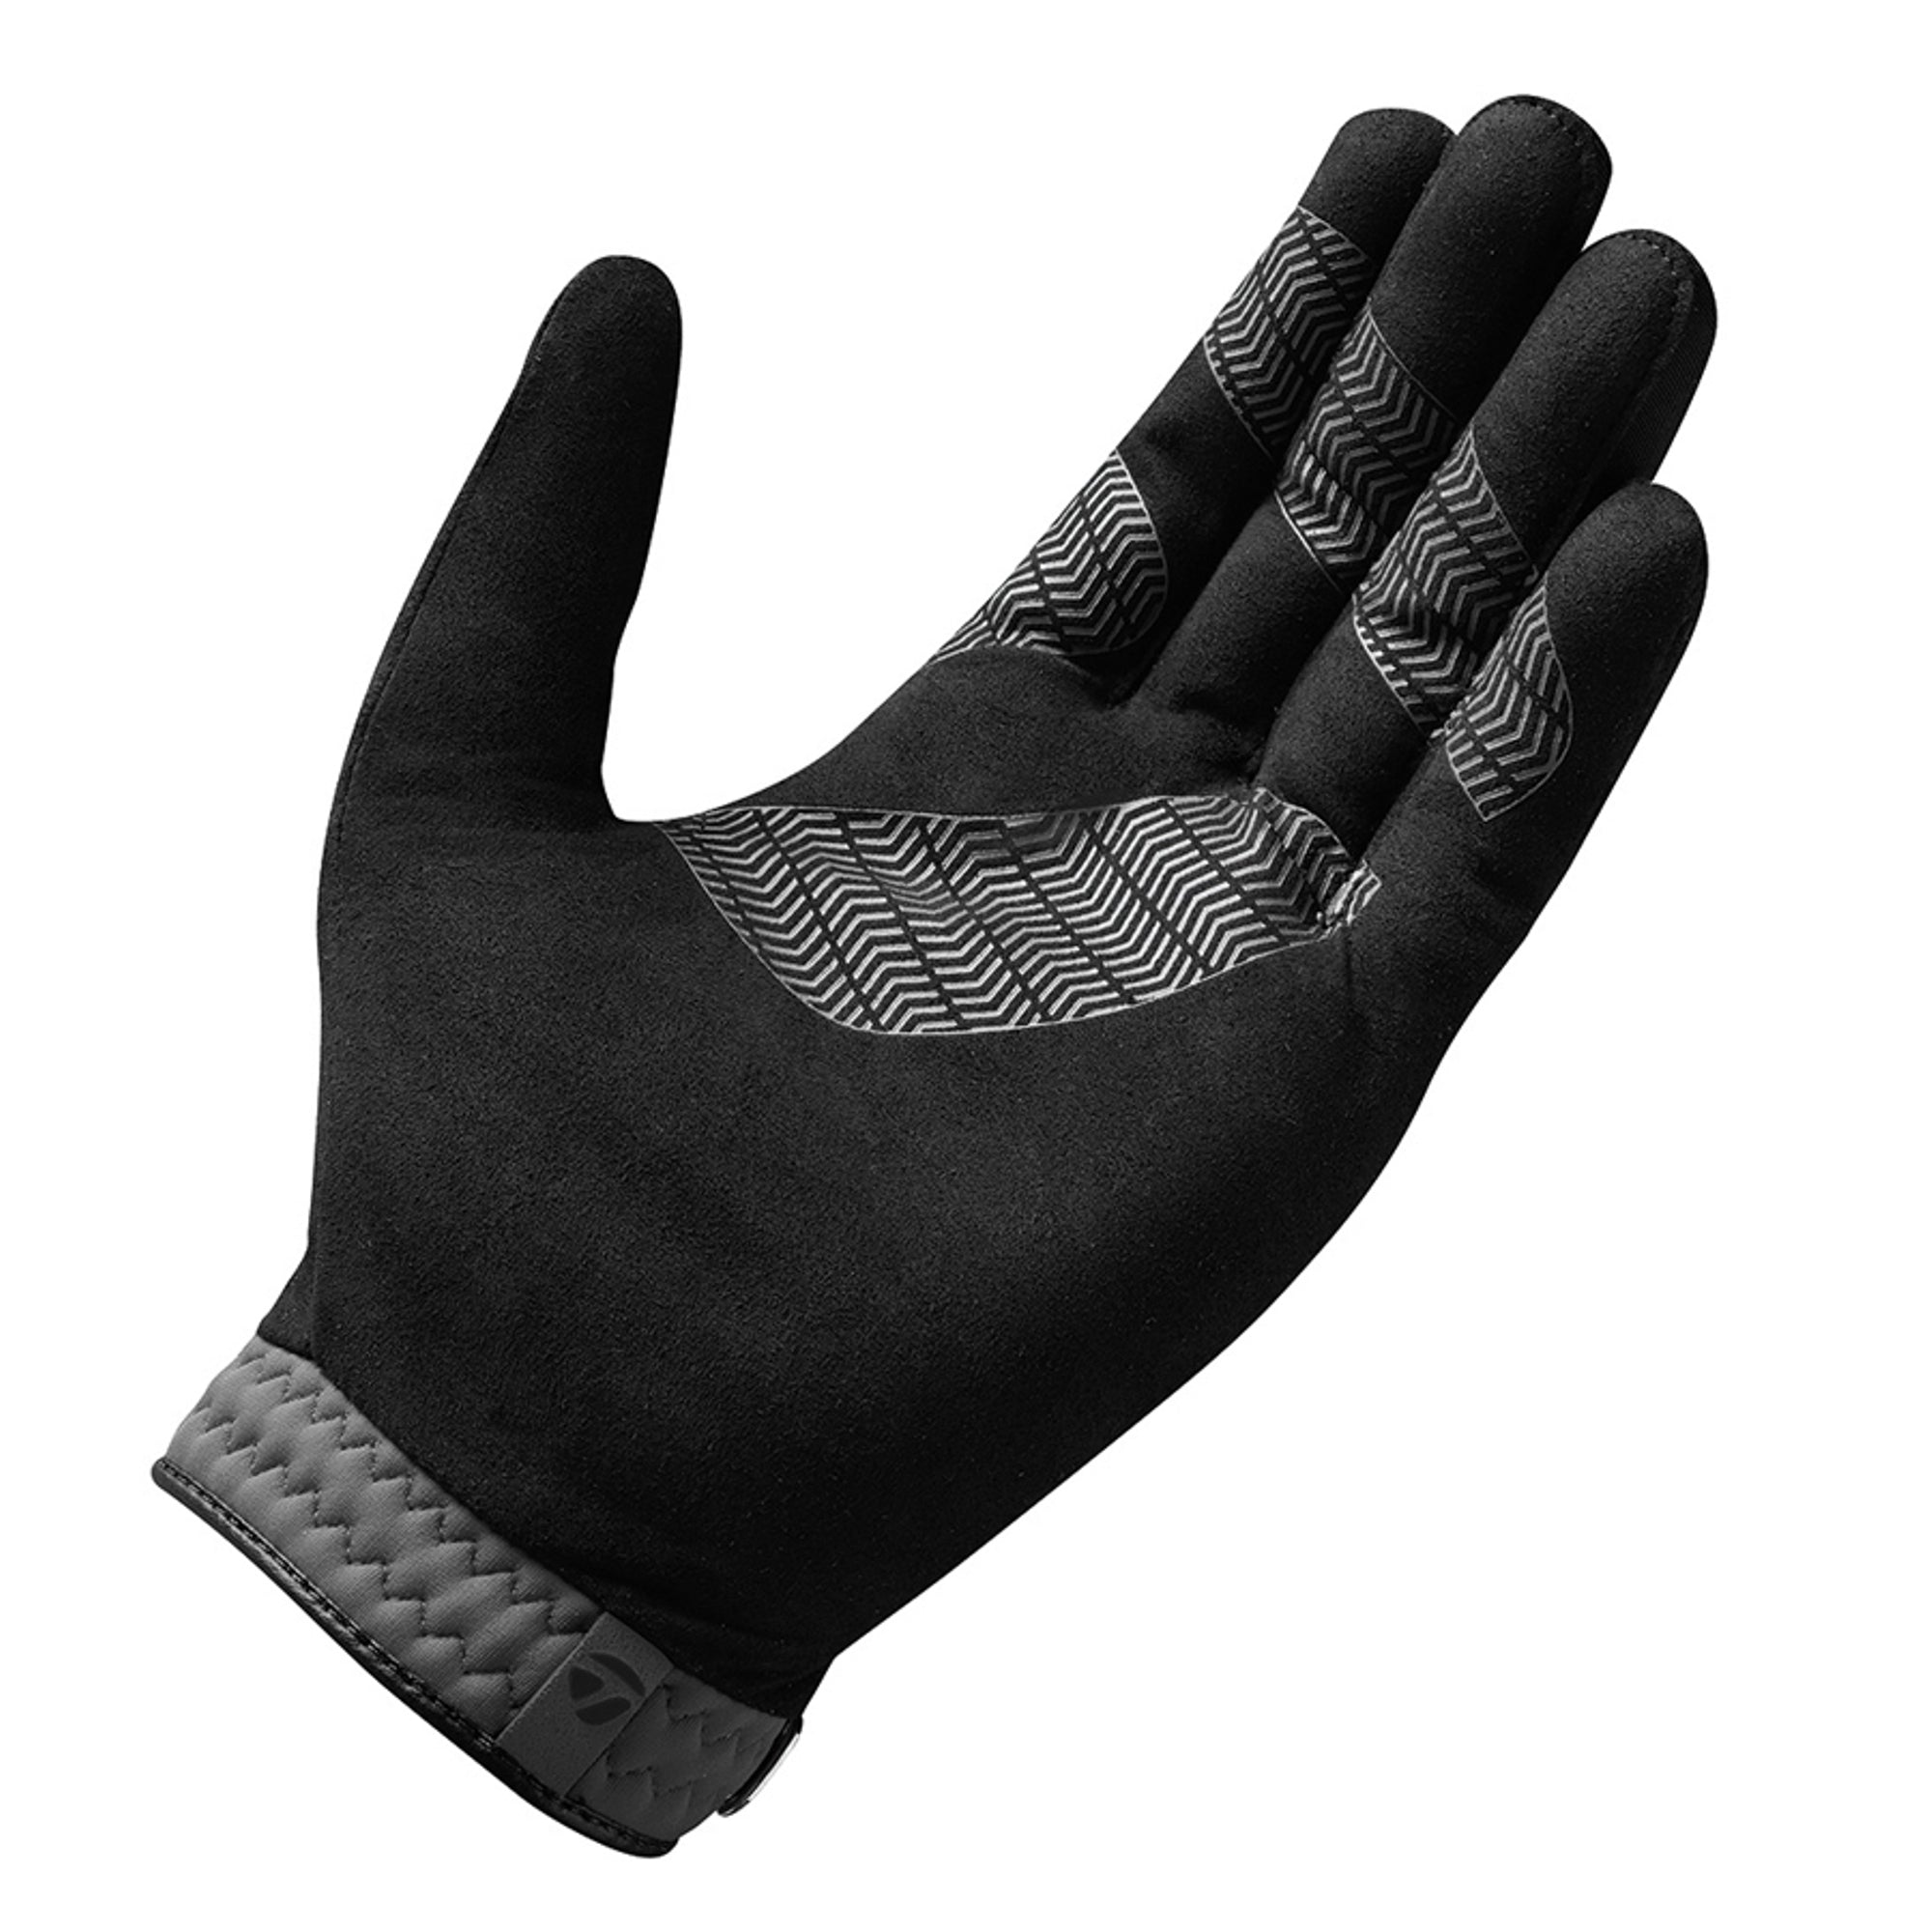 taylormade-rain-control-gloves-n64060-pair